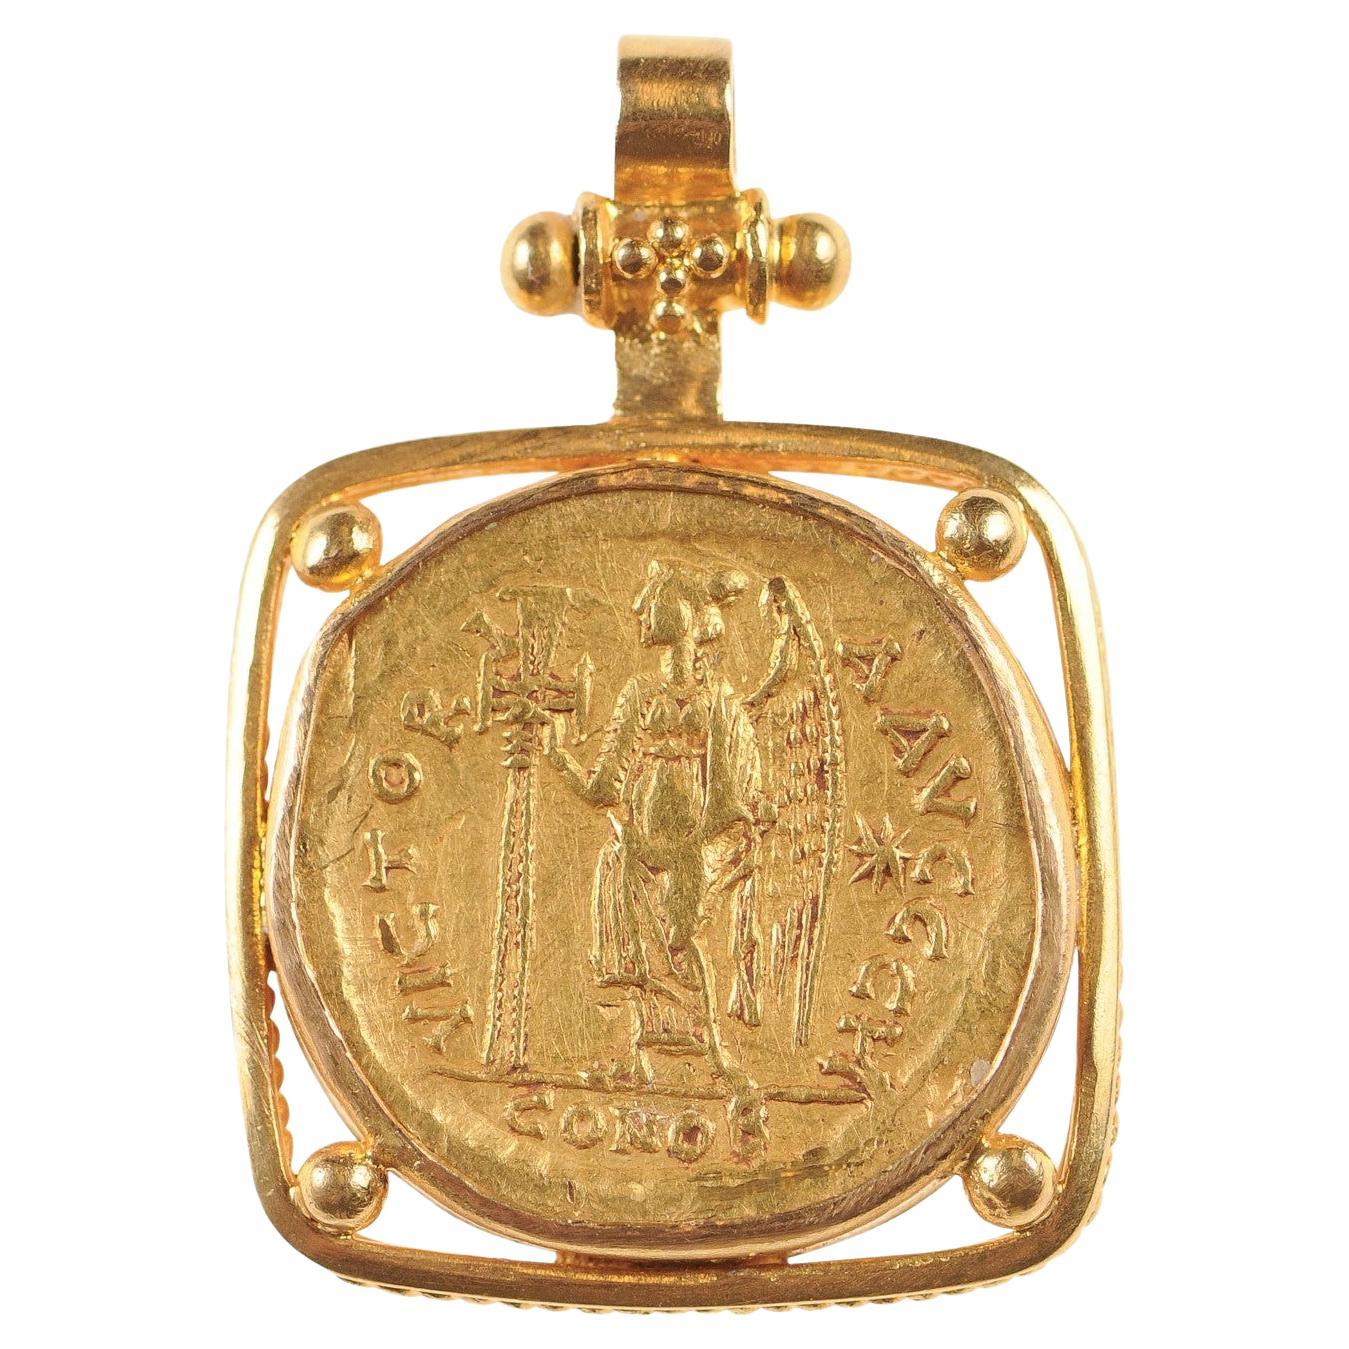 Zeno 2nd Reign AV Gold Solidus Pendant (pendant only) For Sale